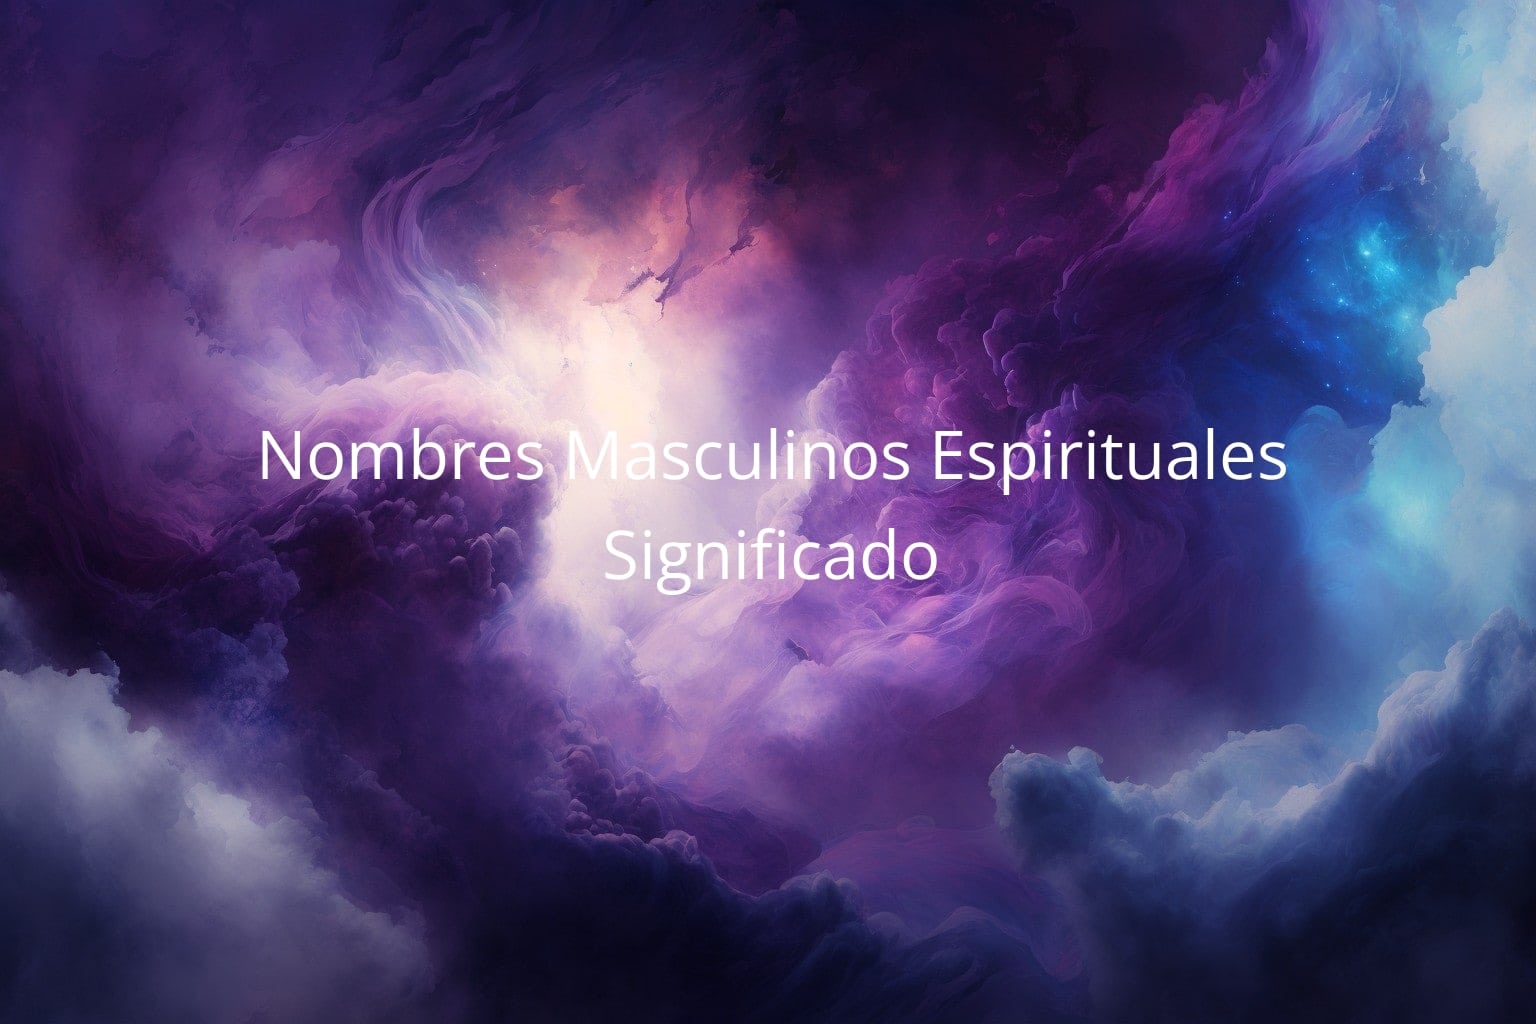 Nombres Masculinos Espirituales y su Significado | Soy Espiritual